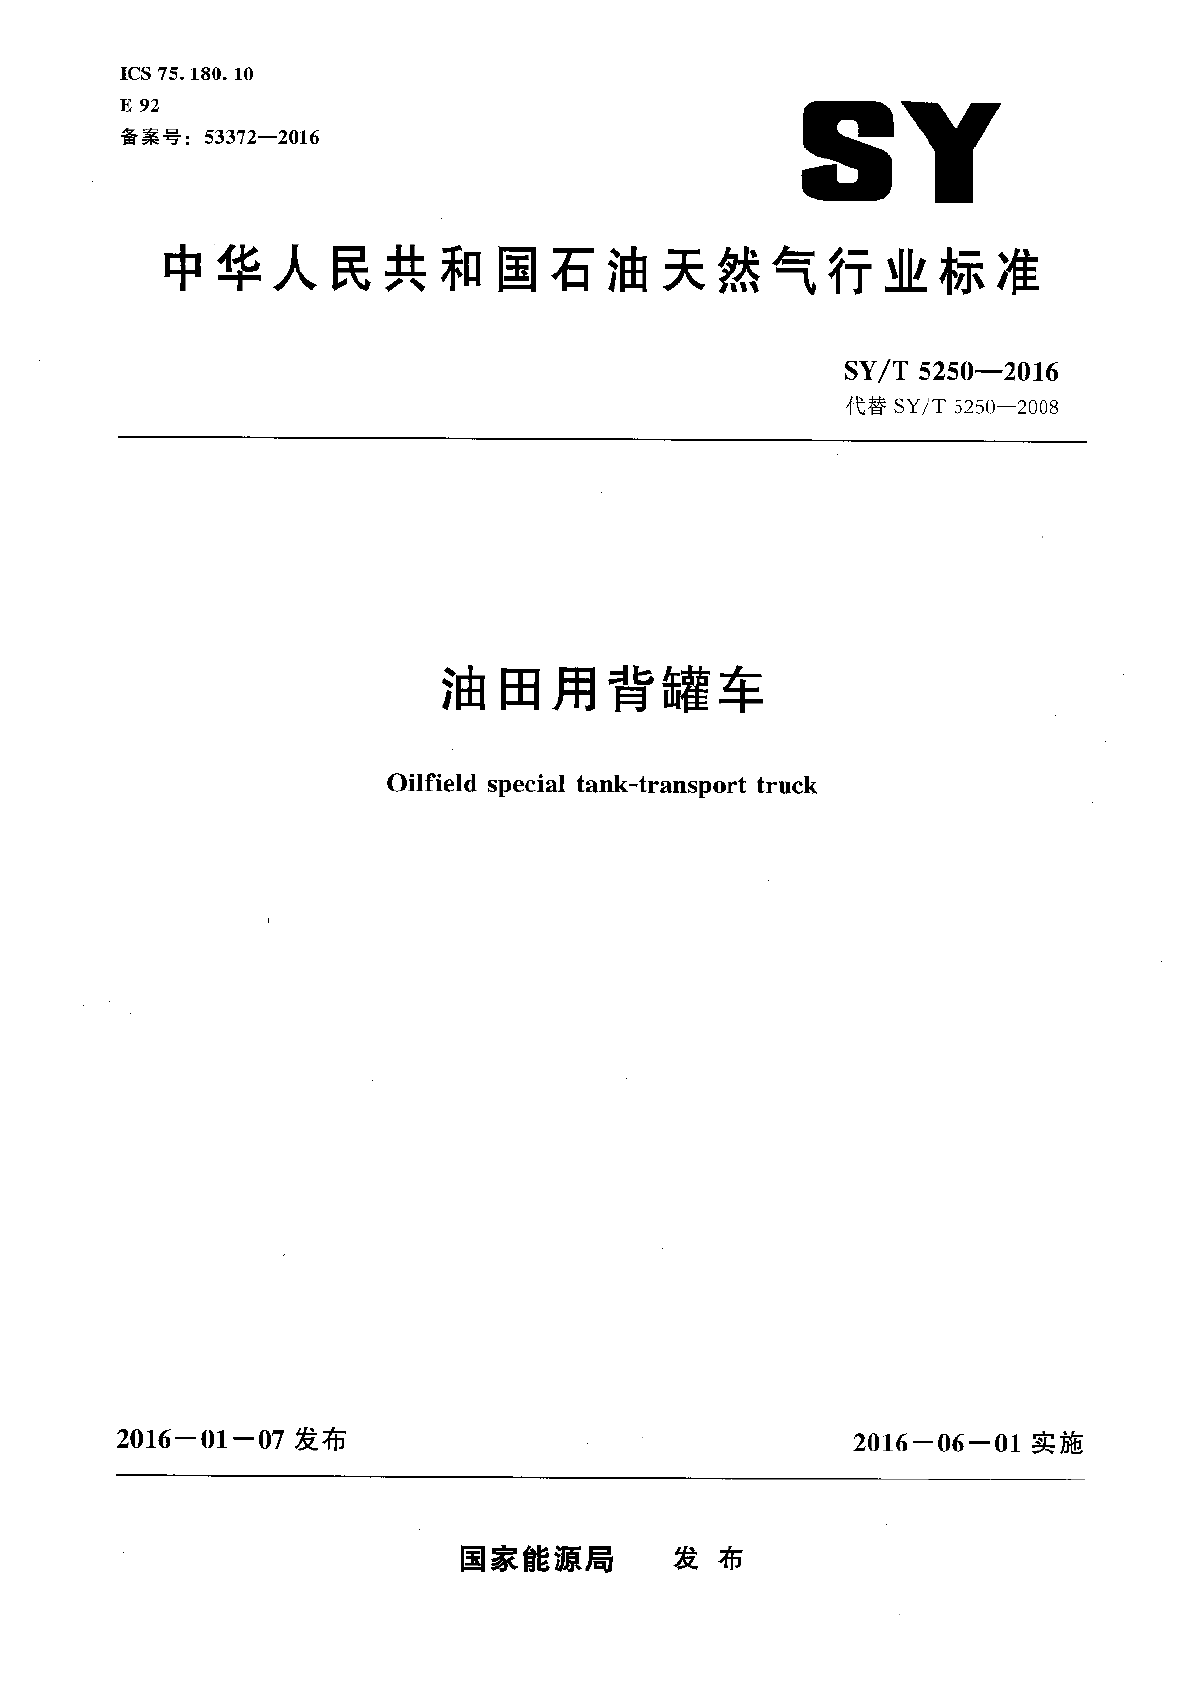 SY∕T 5250-2016 油田用背罐车.pdf